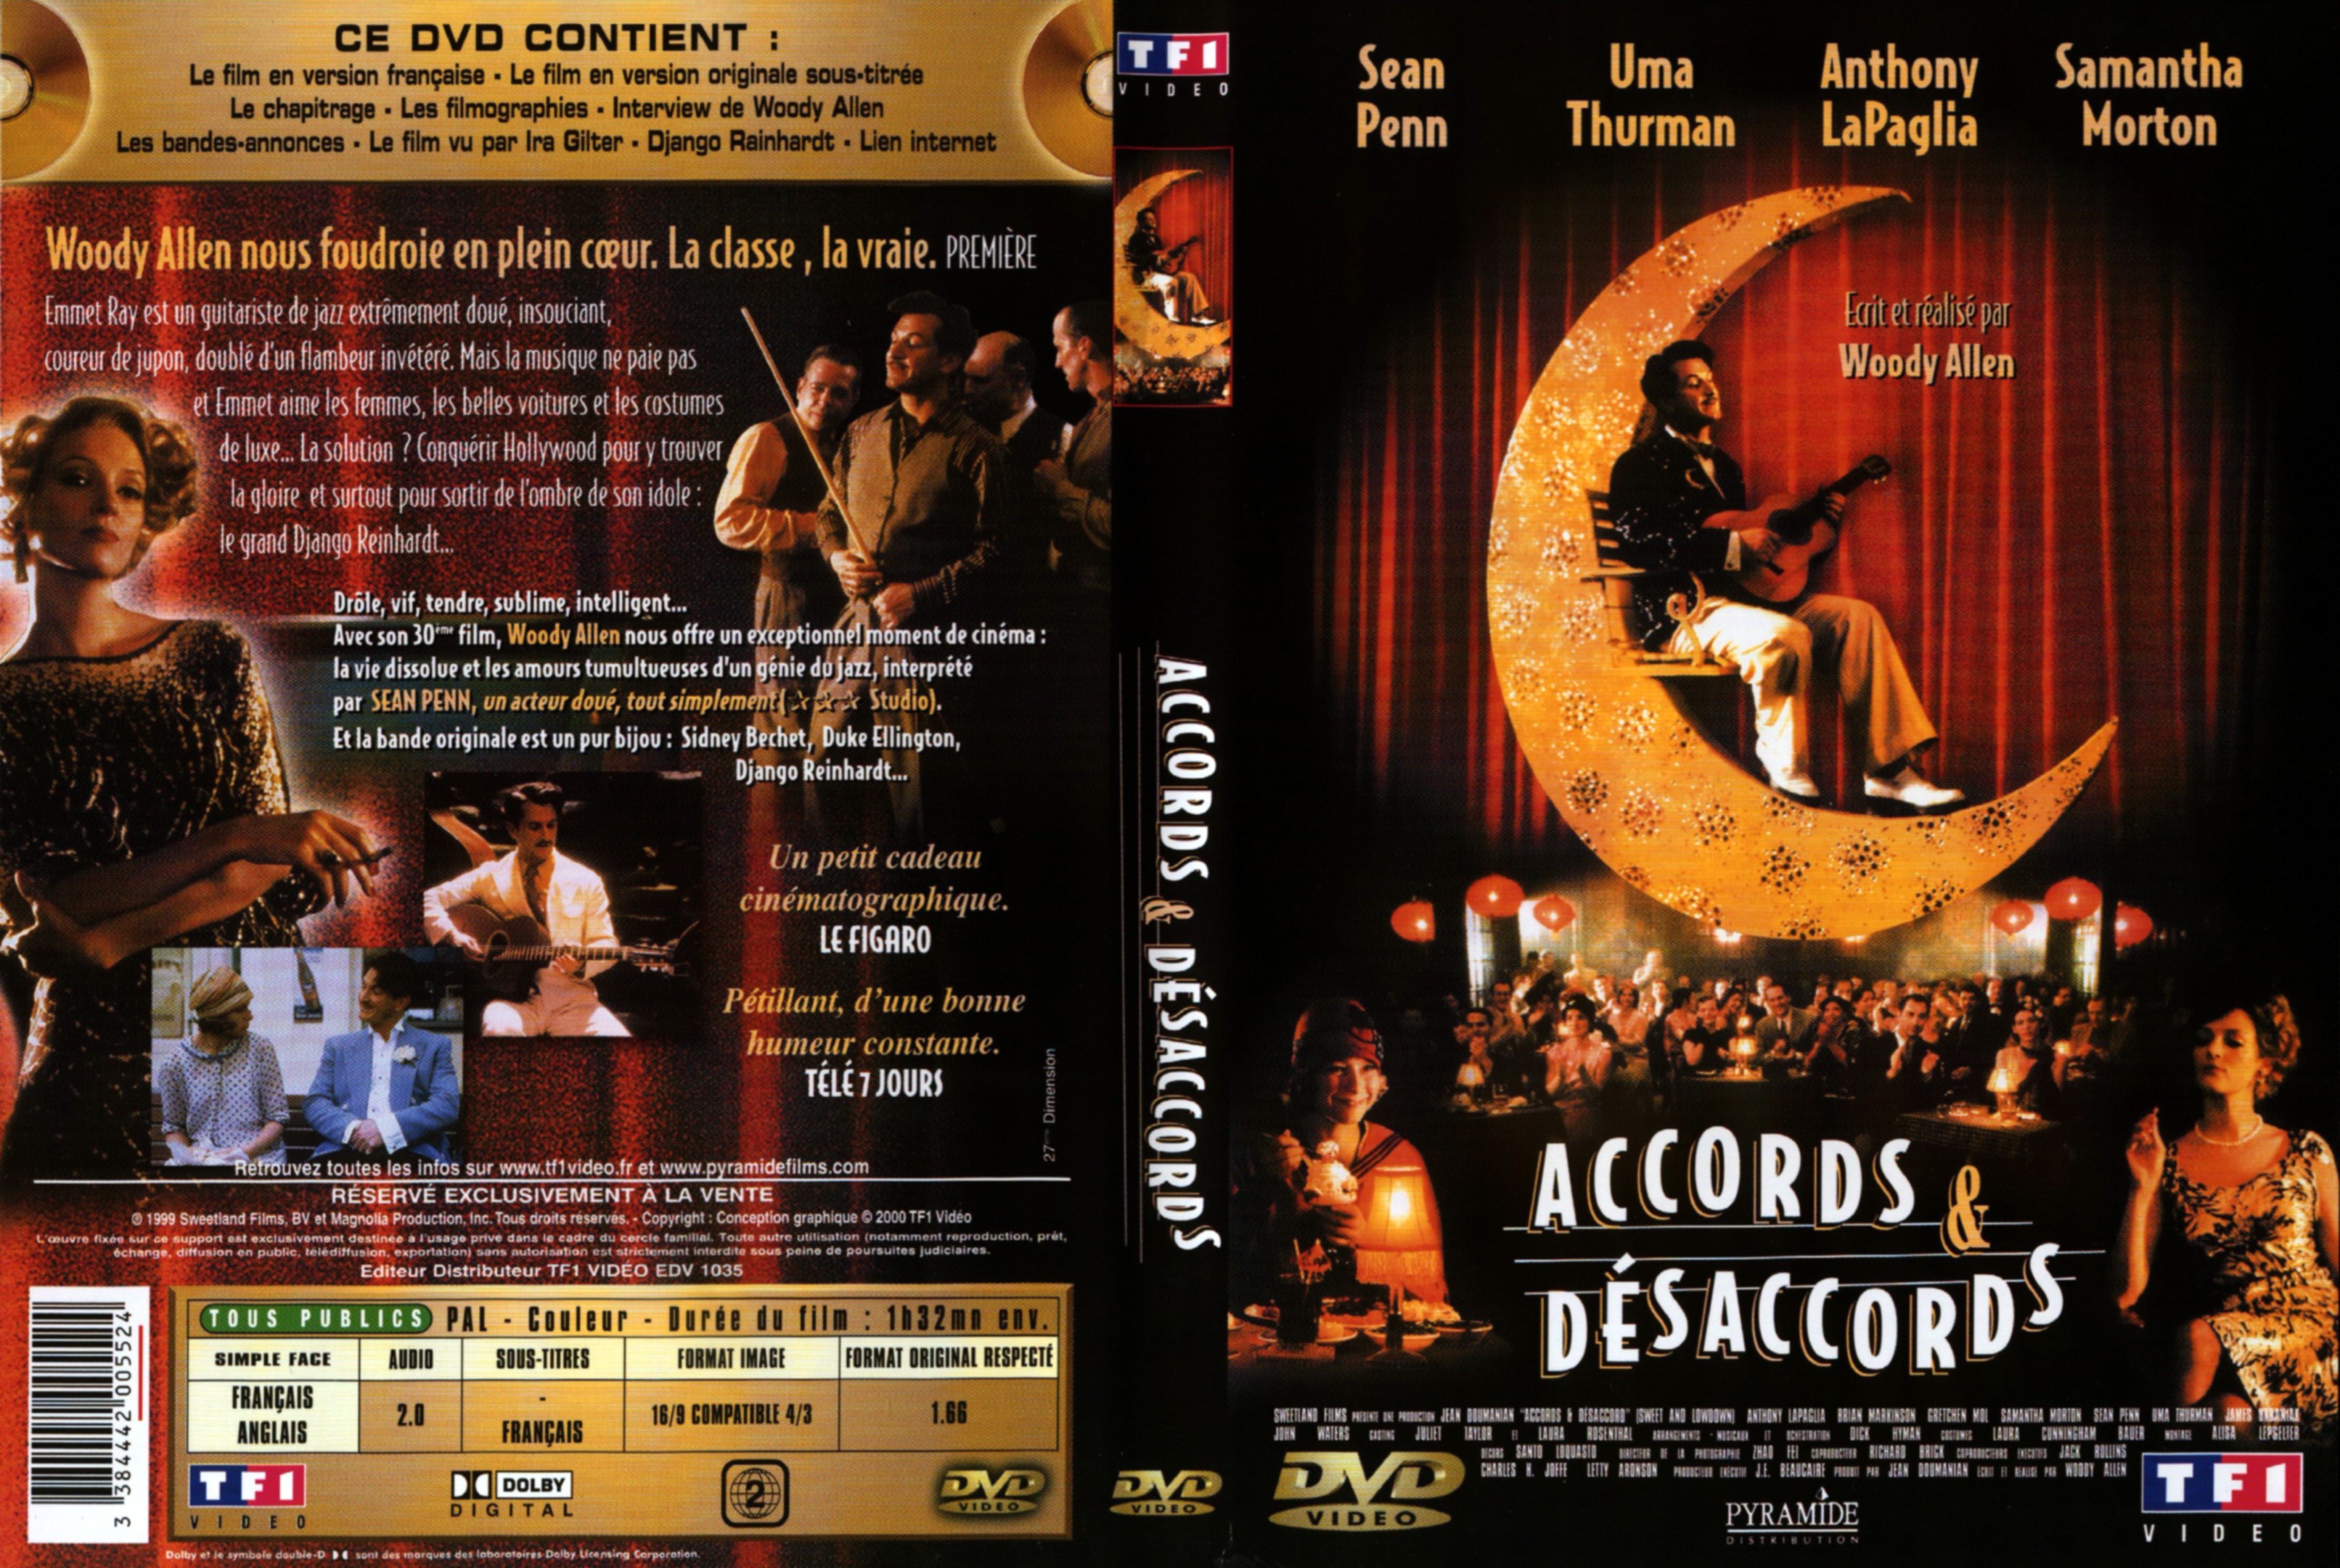 Jaquette DVD Accords et dsaccords